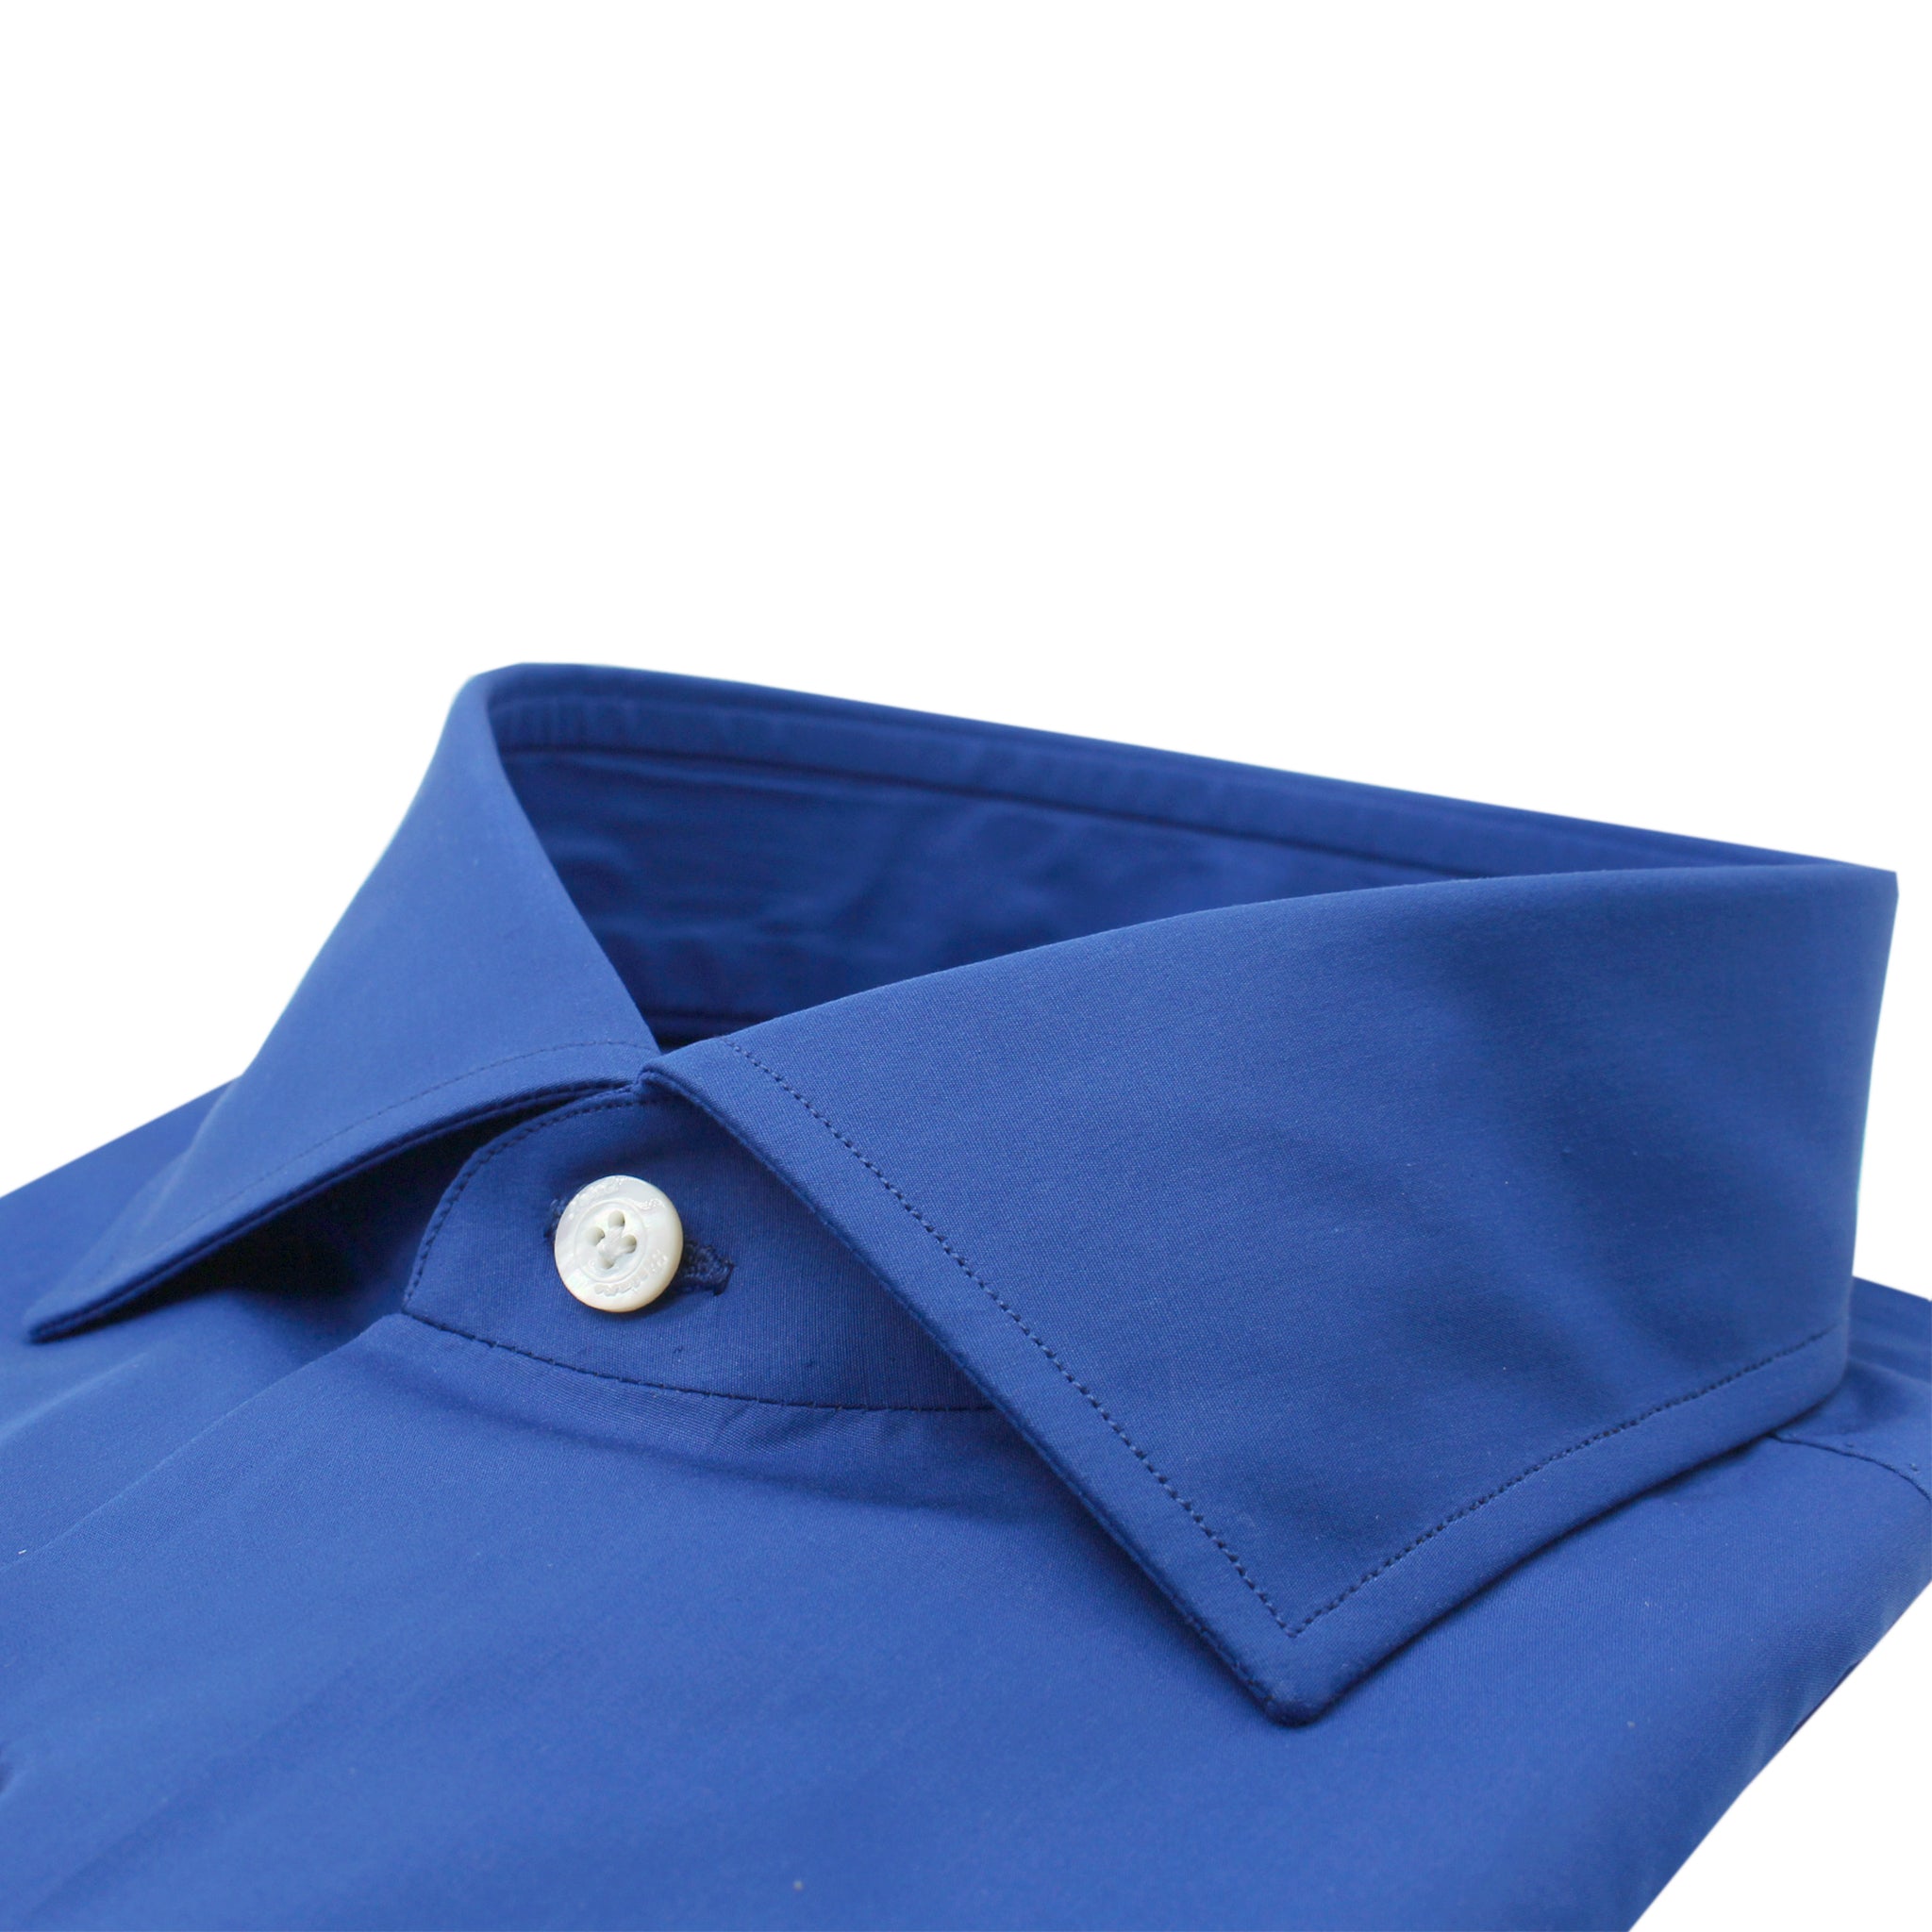 170 a Due fit classic monochrome blue shirt